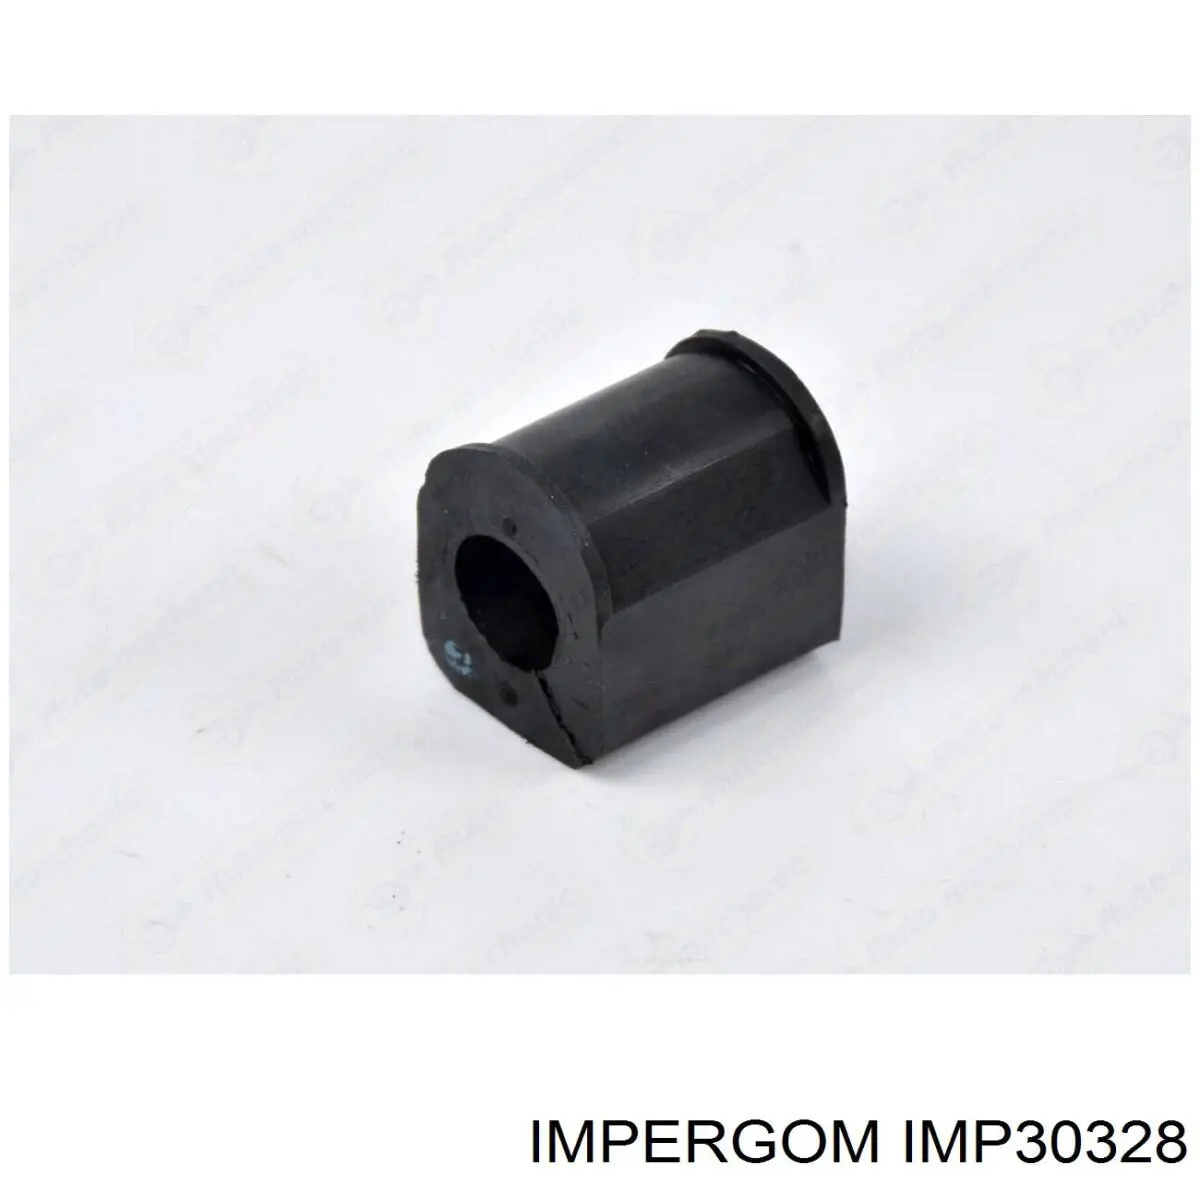 IMP30328 Impergom 